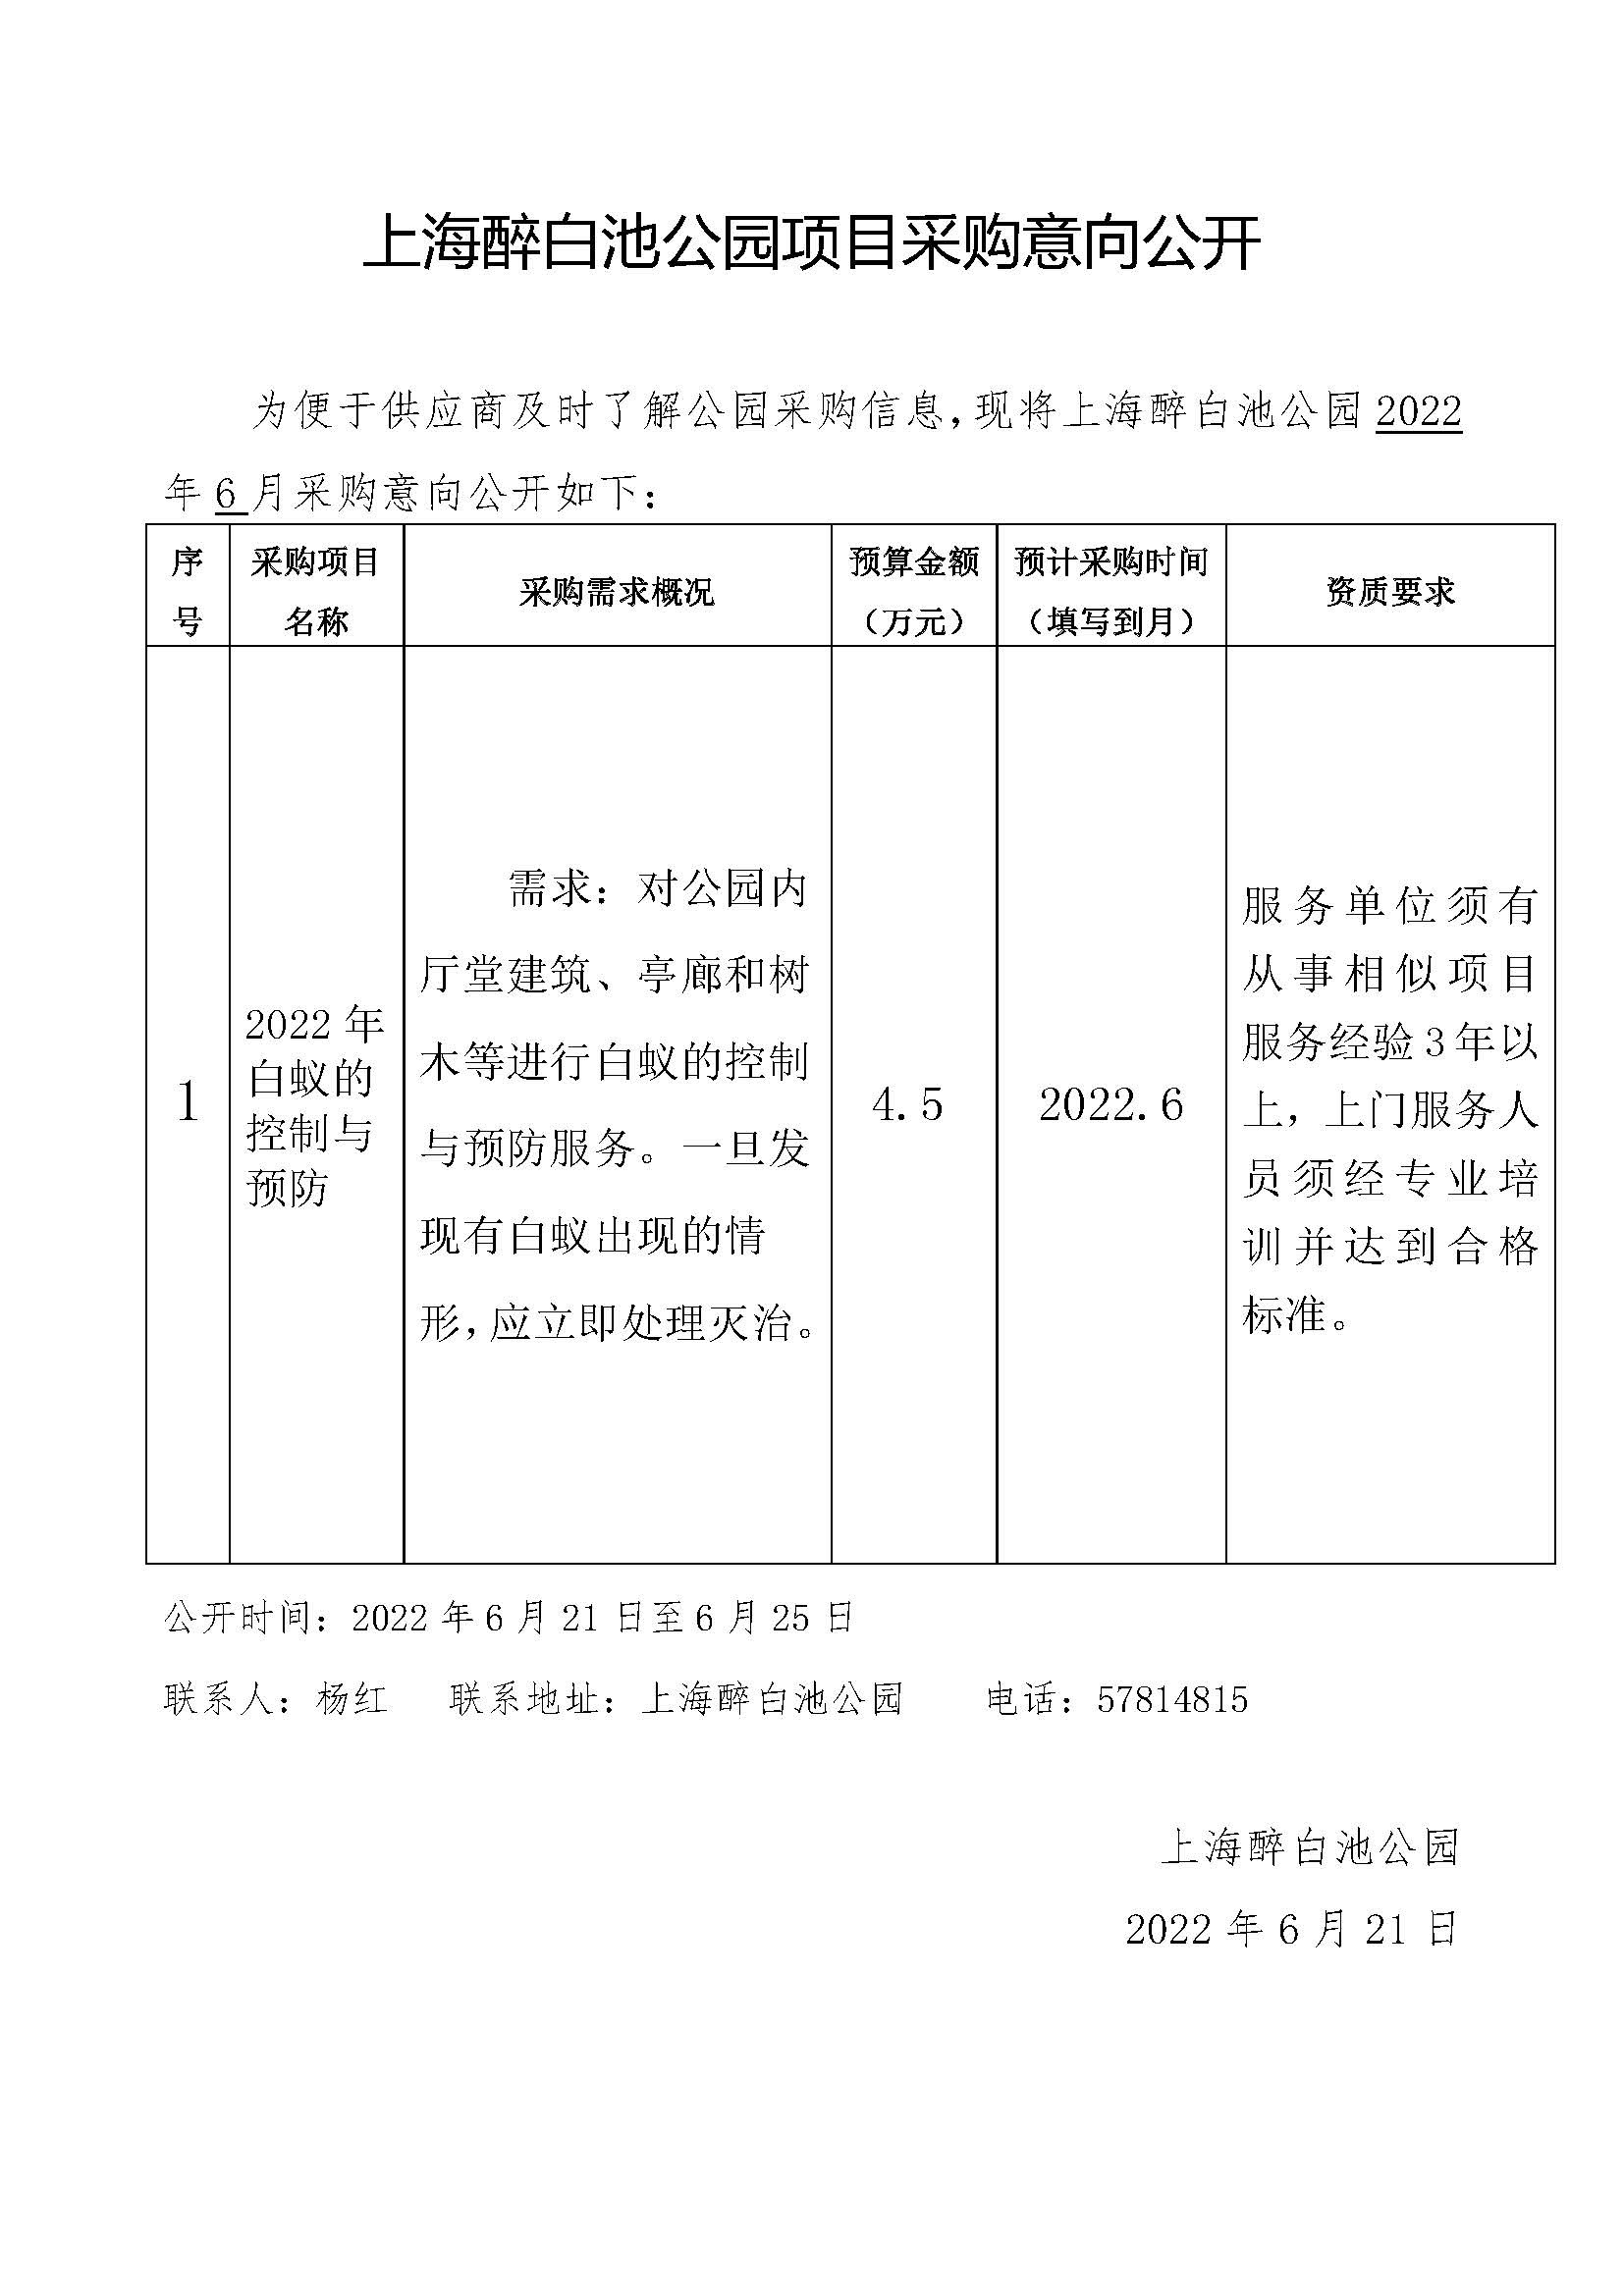 2022.6上海醉白池公园项目采购意向(1).jpg